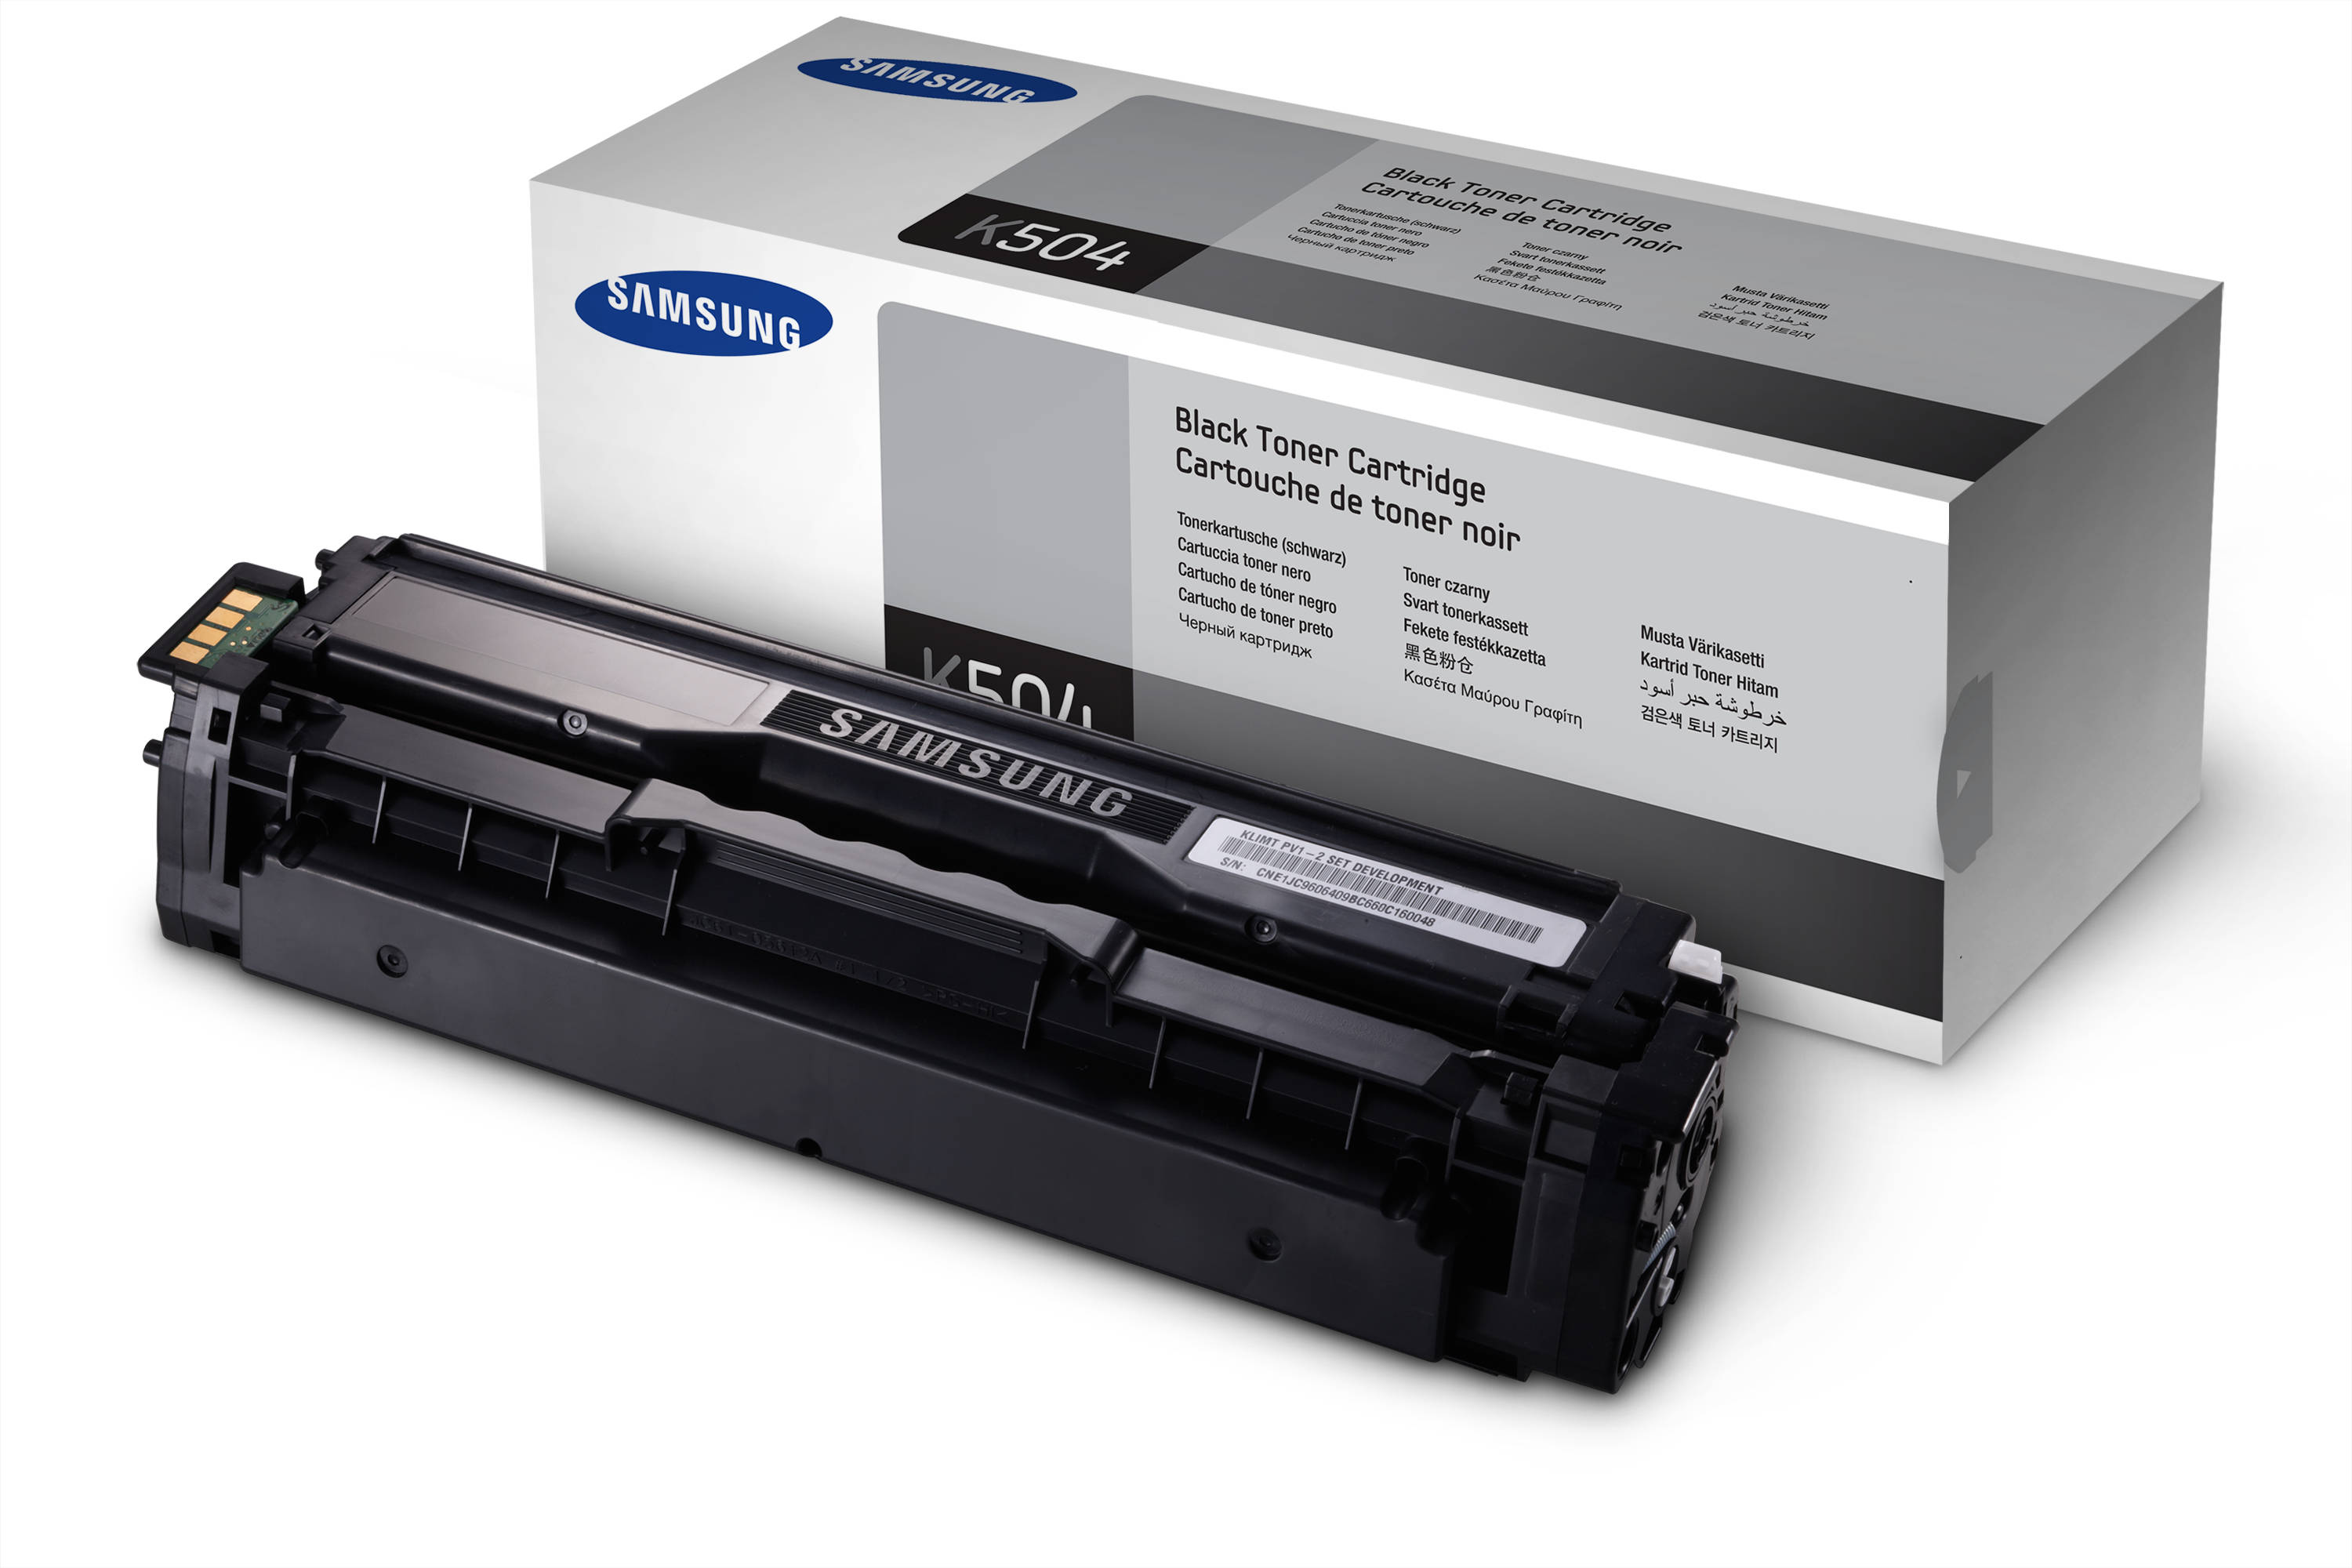 Черный тонер для принтера. Картридж Samsung (CLT-c504s). CLT-c504s картридж. Картридж CLT-k504s для принтера Samsung. CLT-c504.